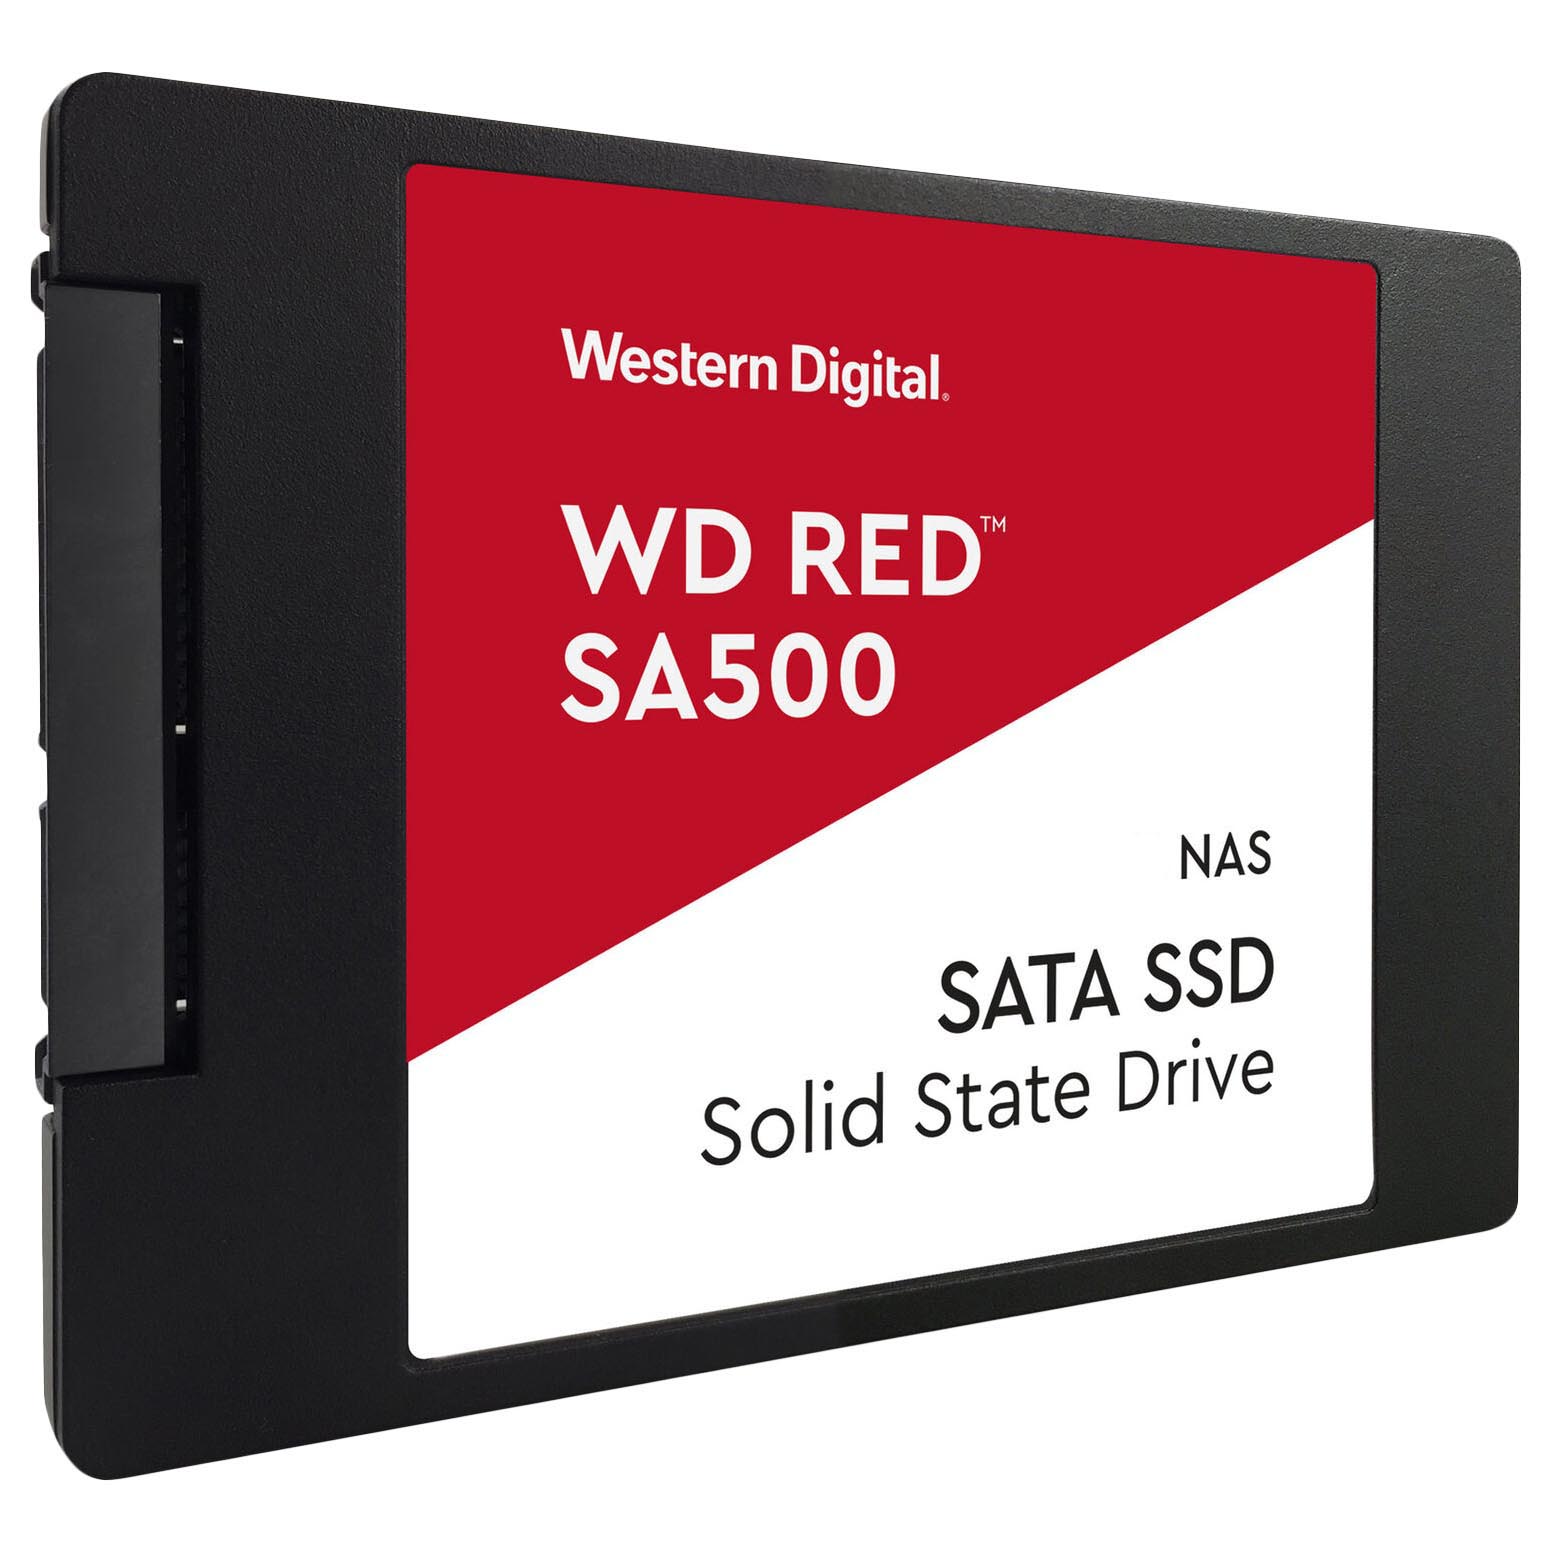 Внутренний твердотельный накопитель Western Digital WD Red SA500 NAS, WDS100T1R0A, 1Тб, 2,5 внутренний твердотельный накопитель western digital wd red sa500 nas wds500g1r0a 500гб 2 5